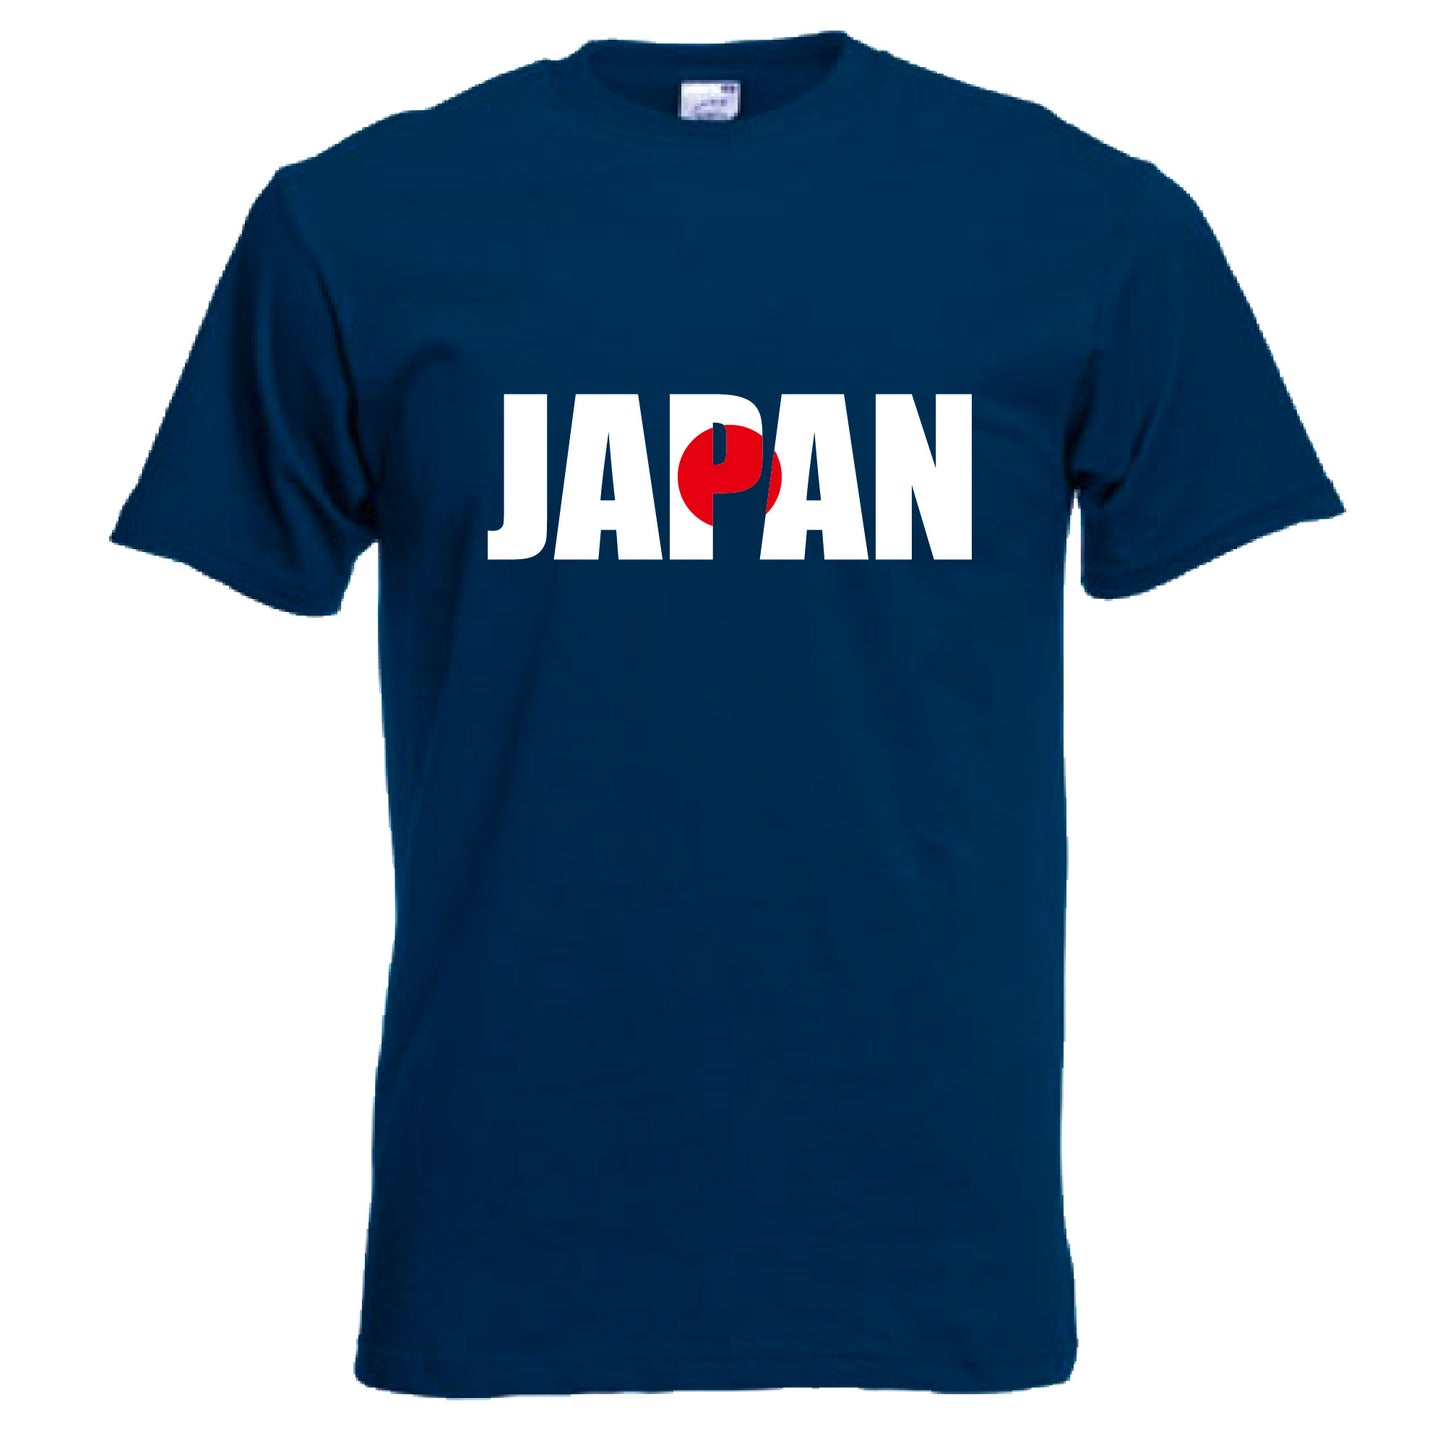 INDIGOS UG - T-Shirt Herren - Japan - Schriftzug - Fussball